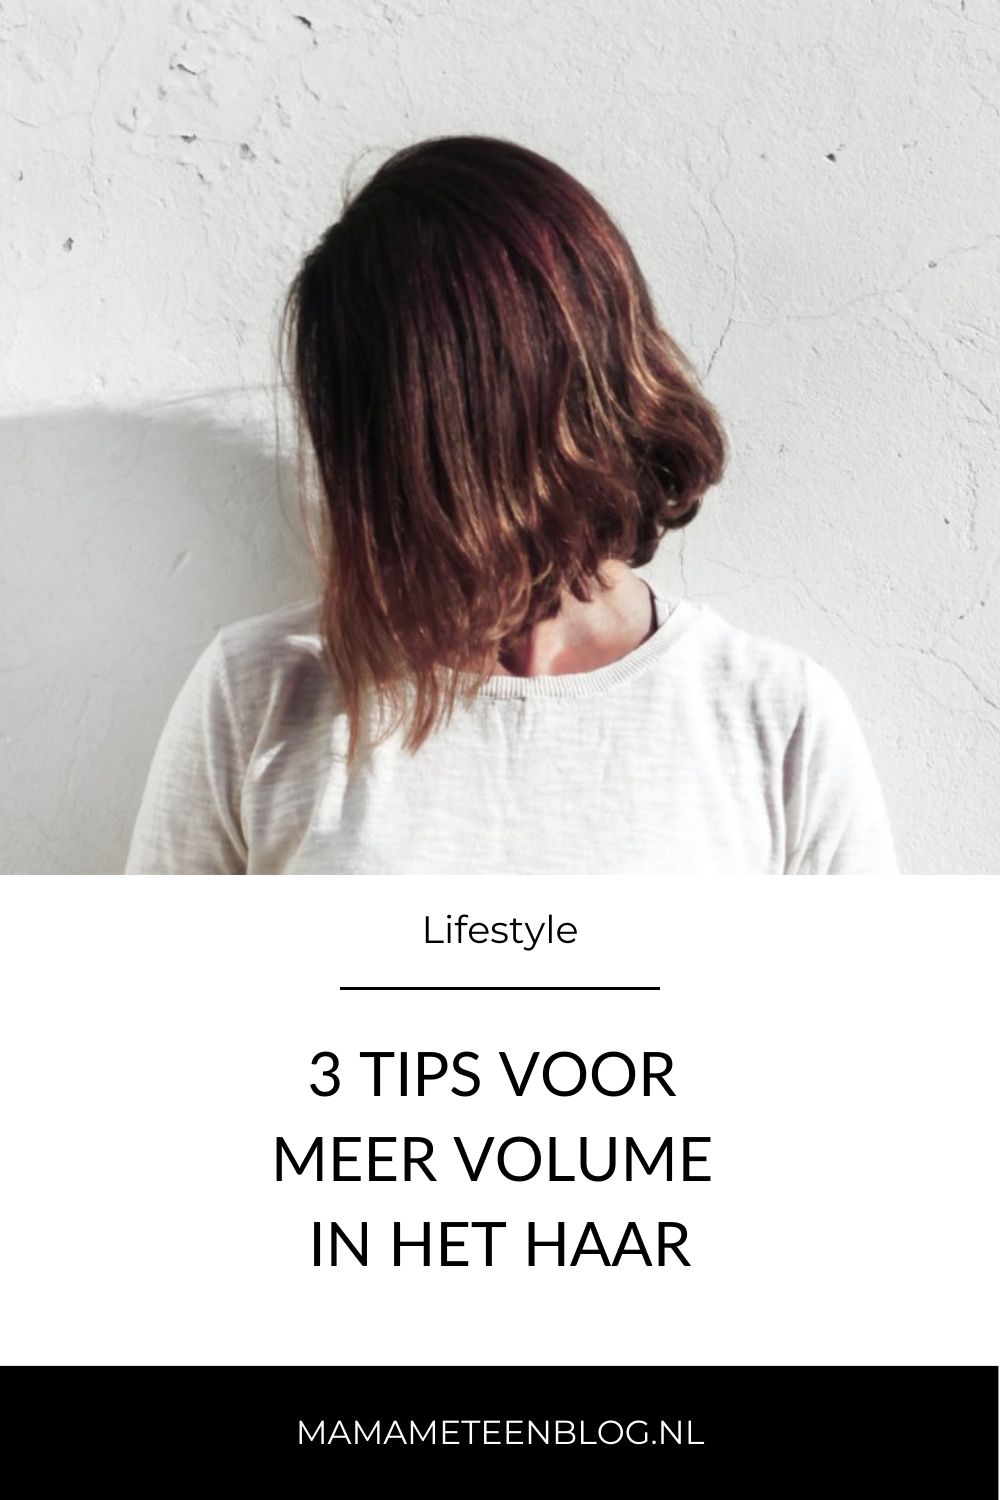 3 tips voor meer volume in het haar mamameteenblog.nl